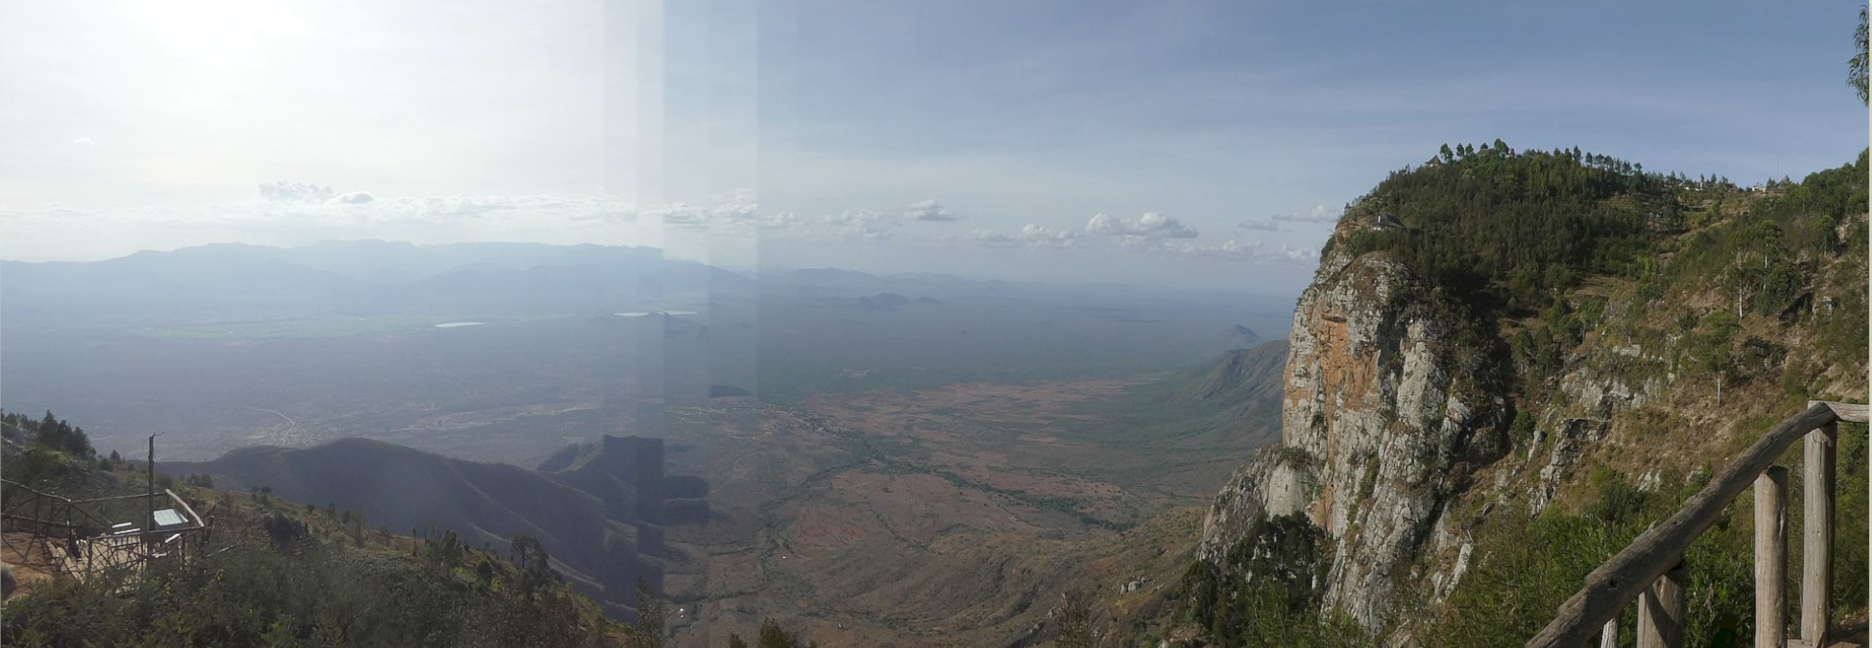 Usambara Mountains, Mambo view point